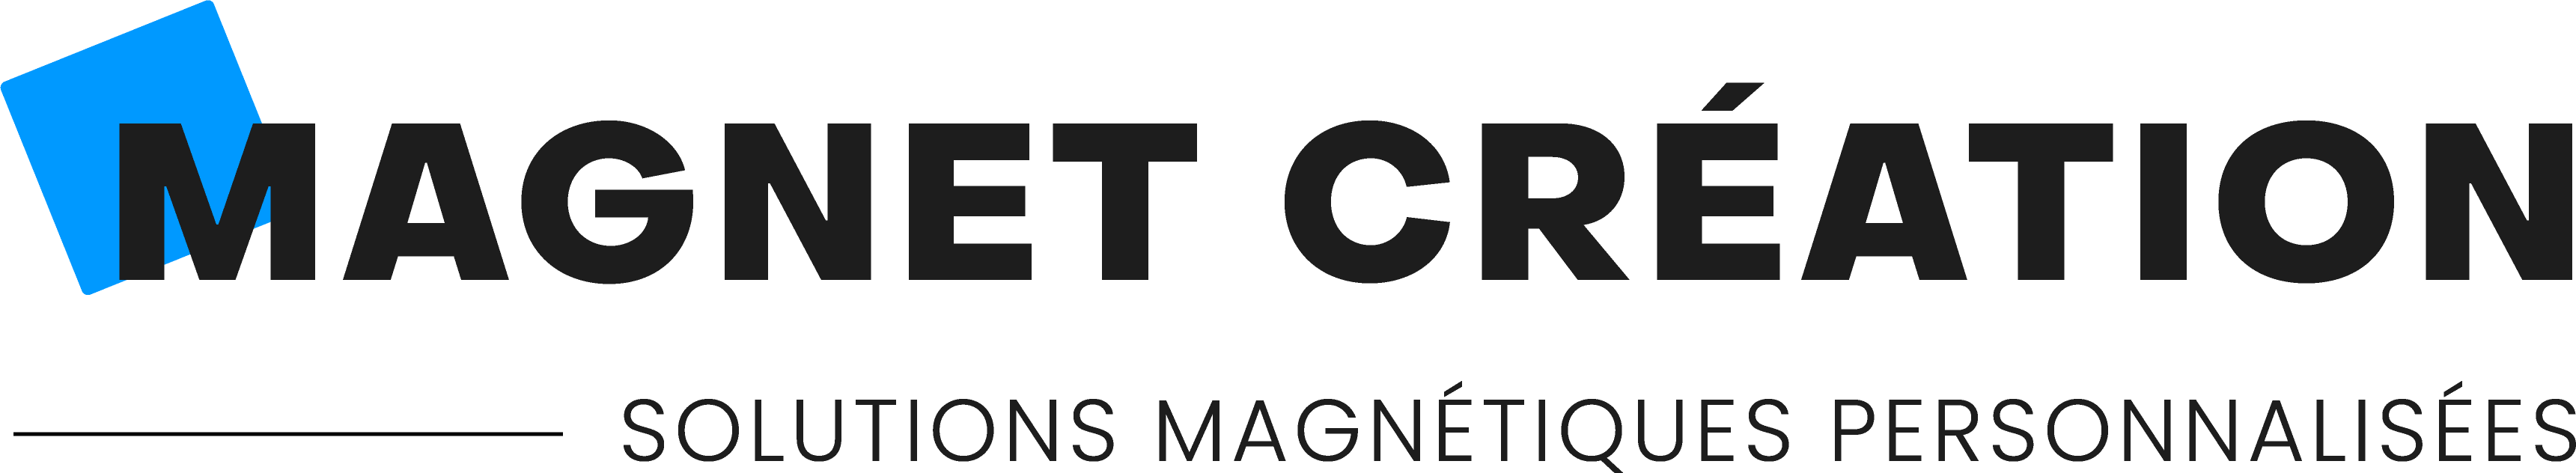 Magnet tableau blanc à la forme de votre logo de fabrication